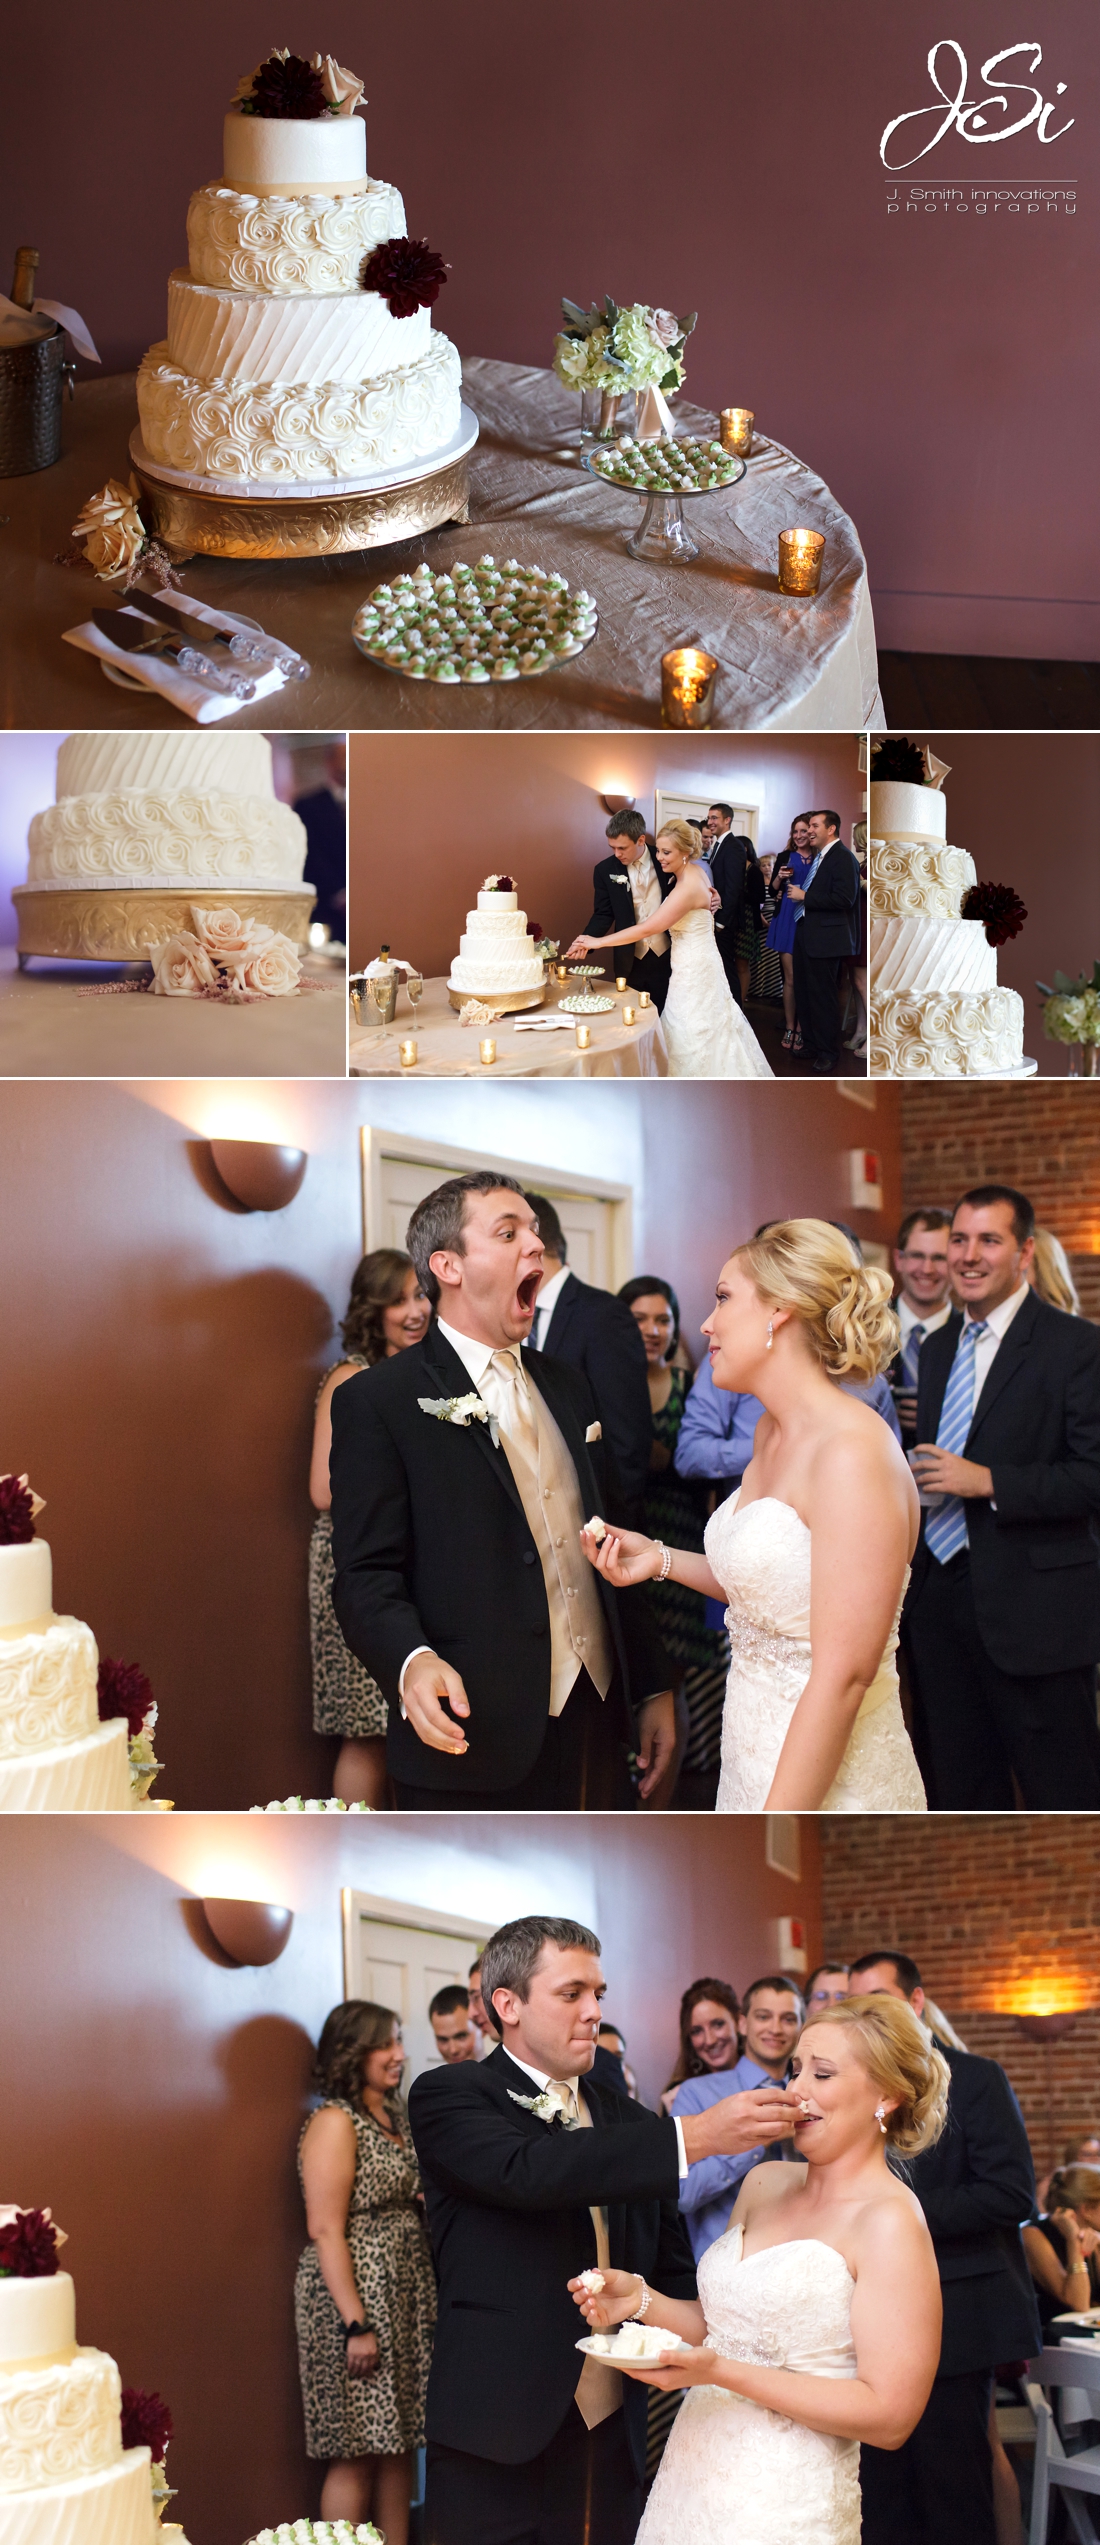 Kansas City Westport Californos Wedding cake cutting reception picture